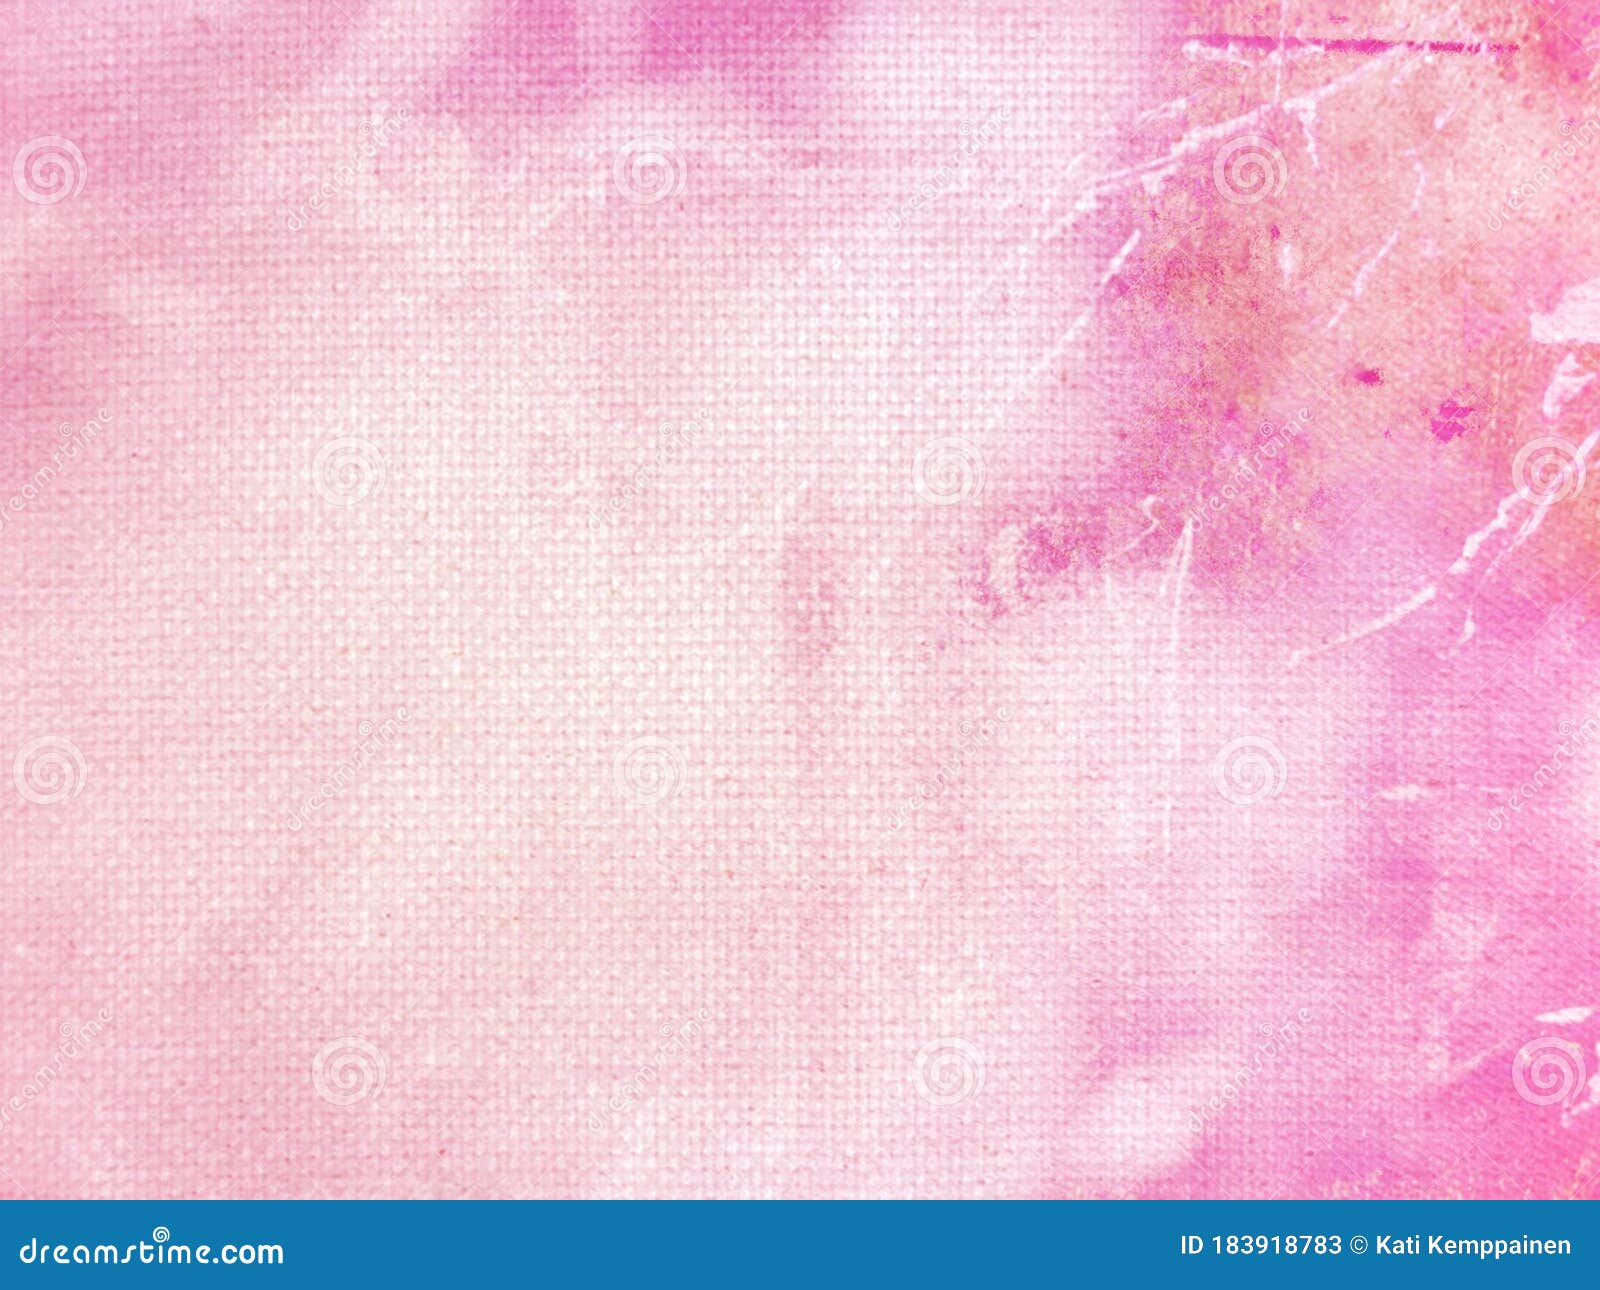 Pastel Pink Grunge Canvas Texture Gradient Background Stock ...